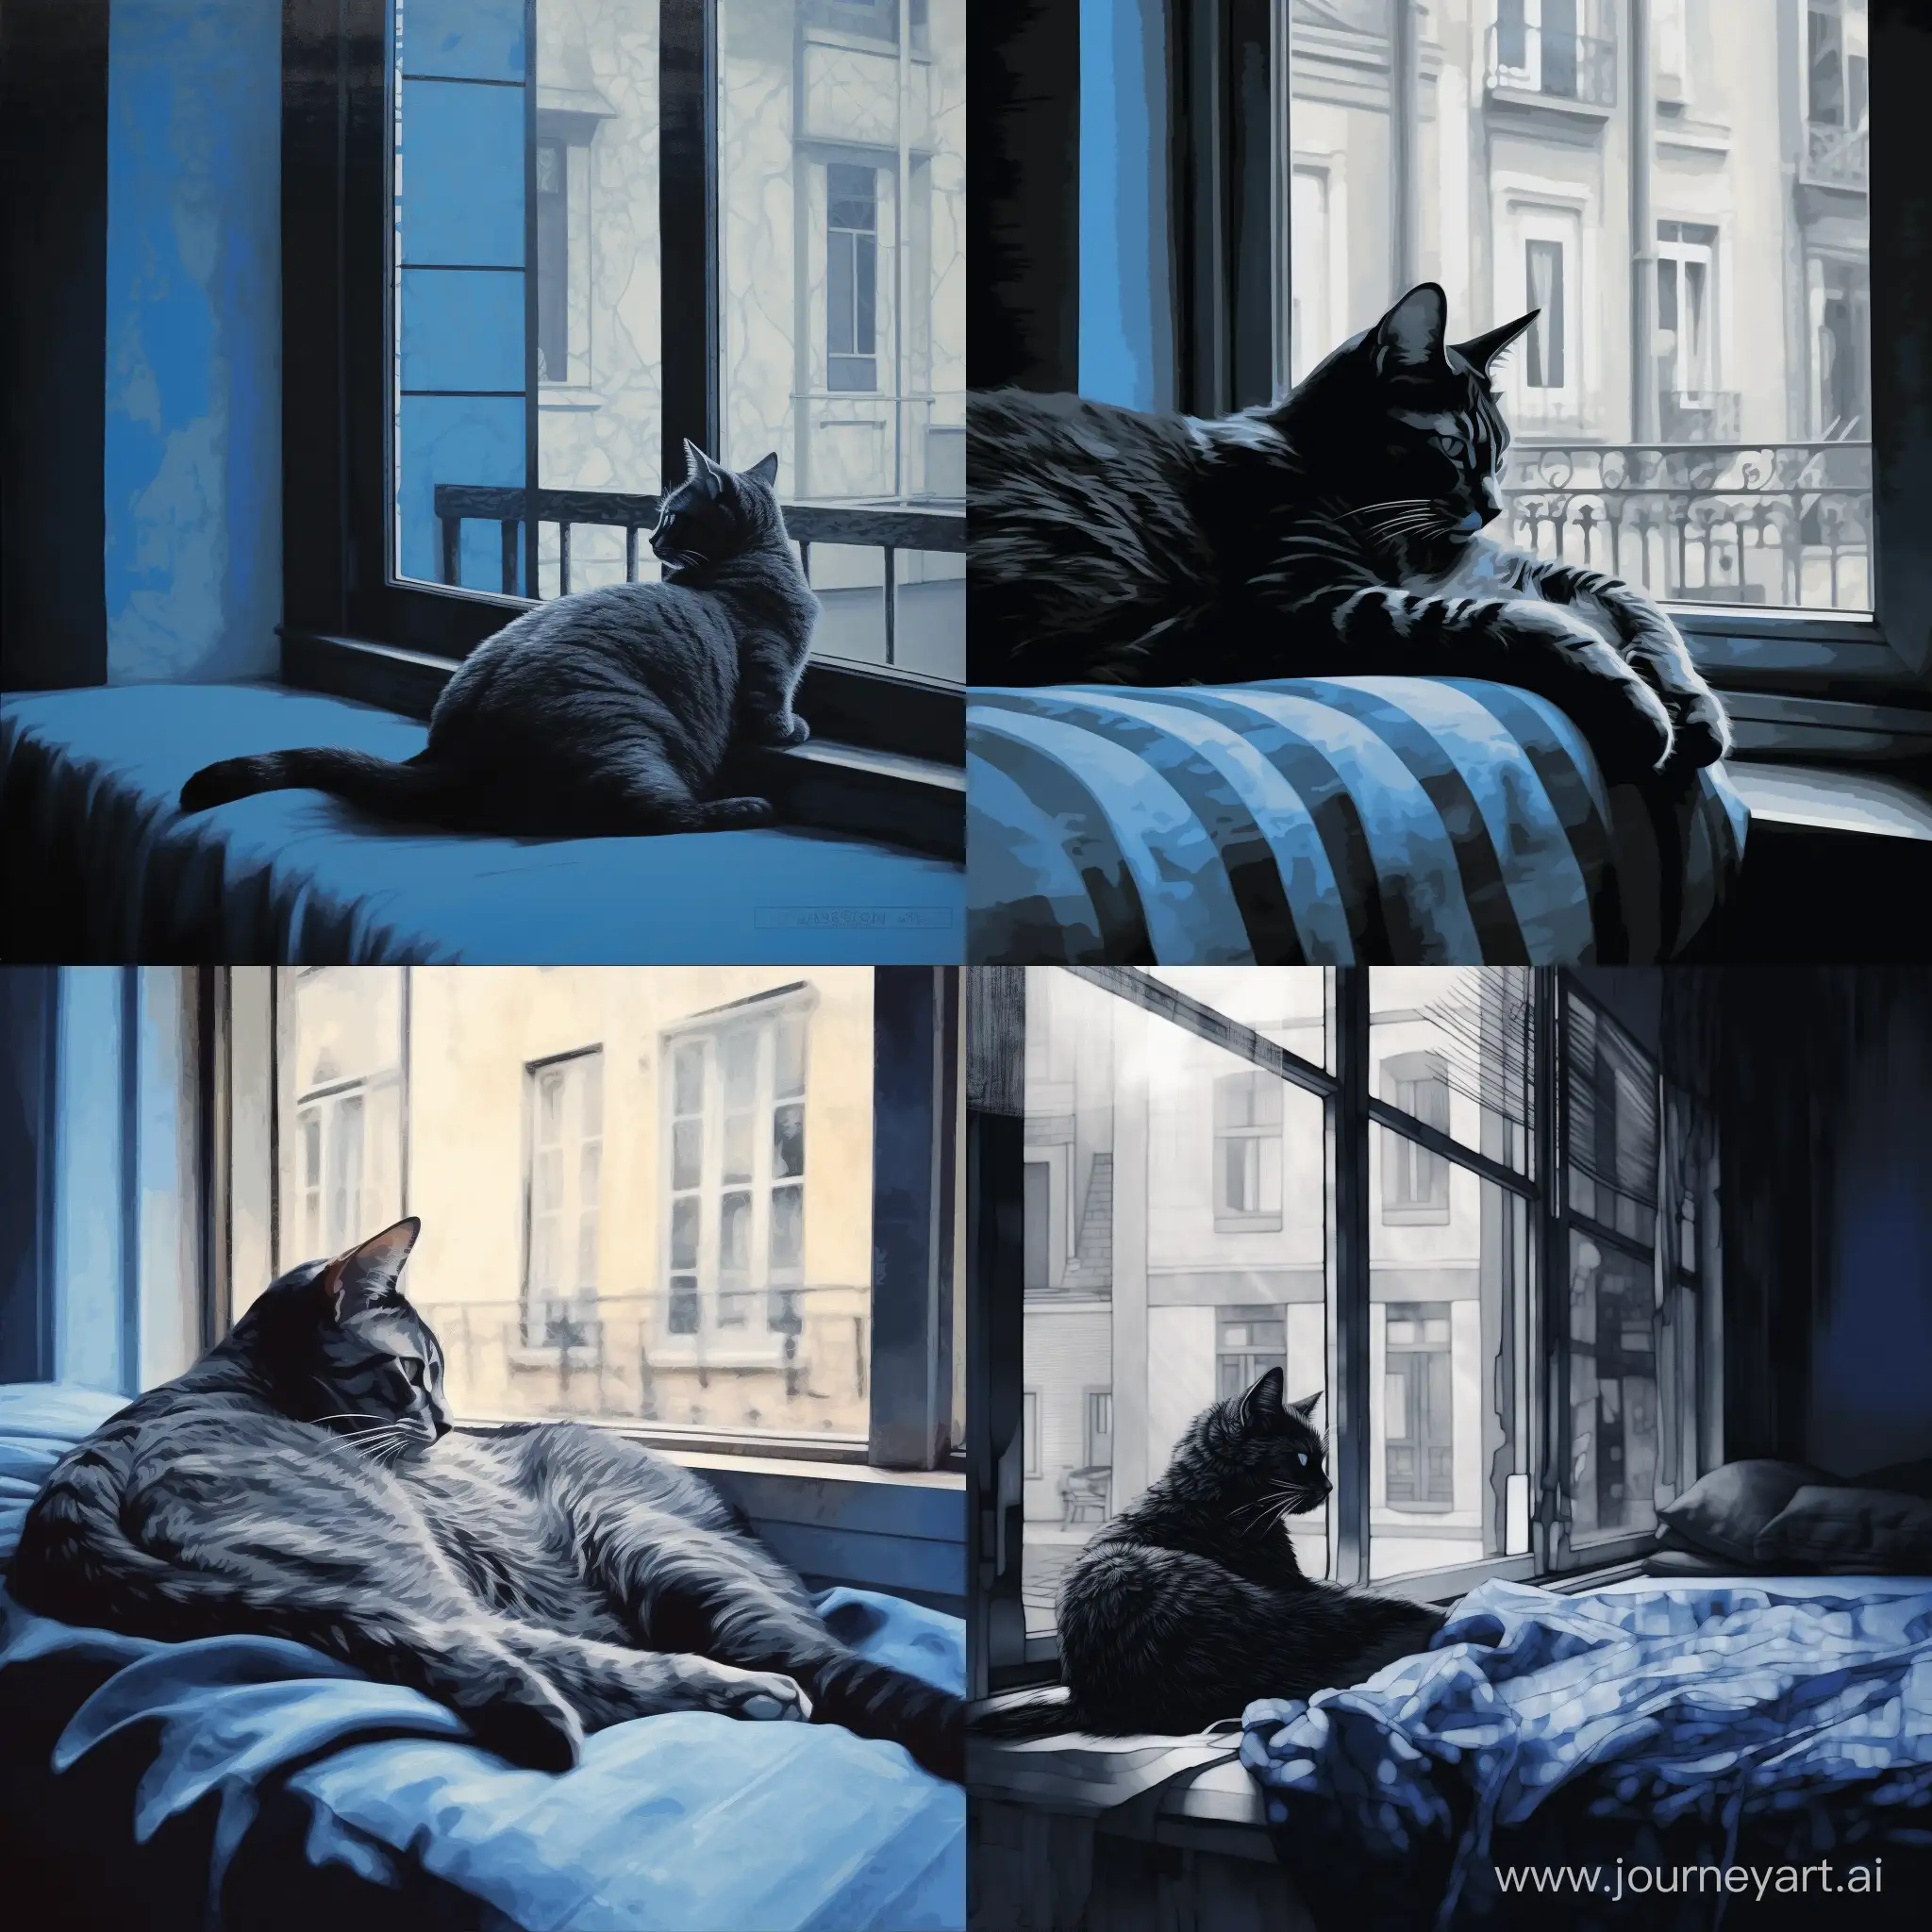 Рисунок минимализм, голубая кошка с черными узорами лениво разлеглась на фоне окна, мягкий свет проникает через окна отбрасывая блики на кошку